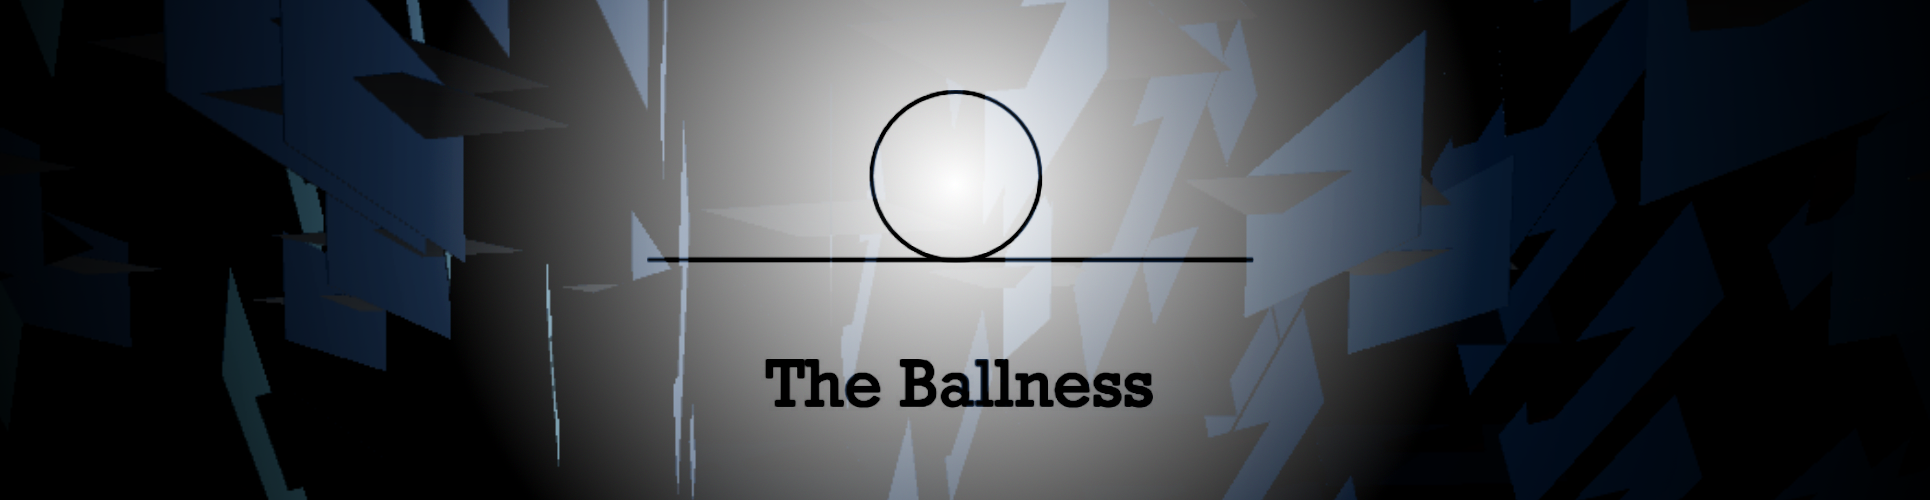 The Ballness v0.2